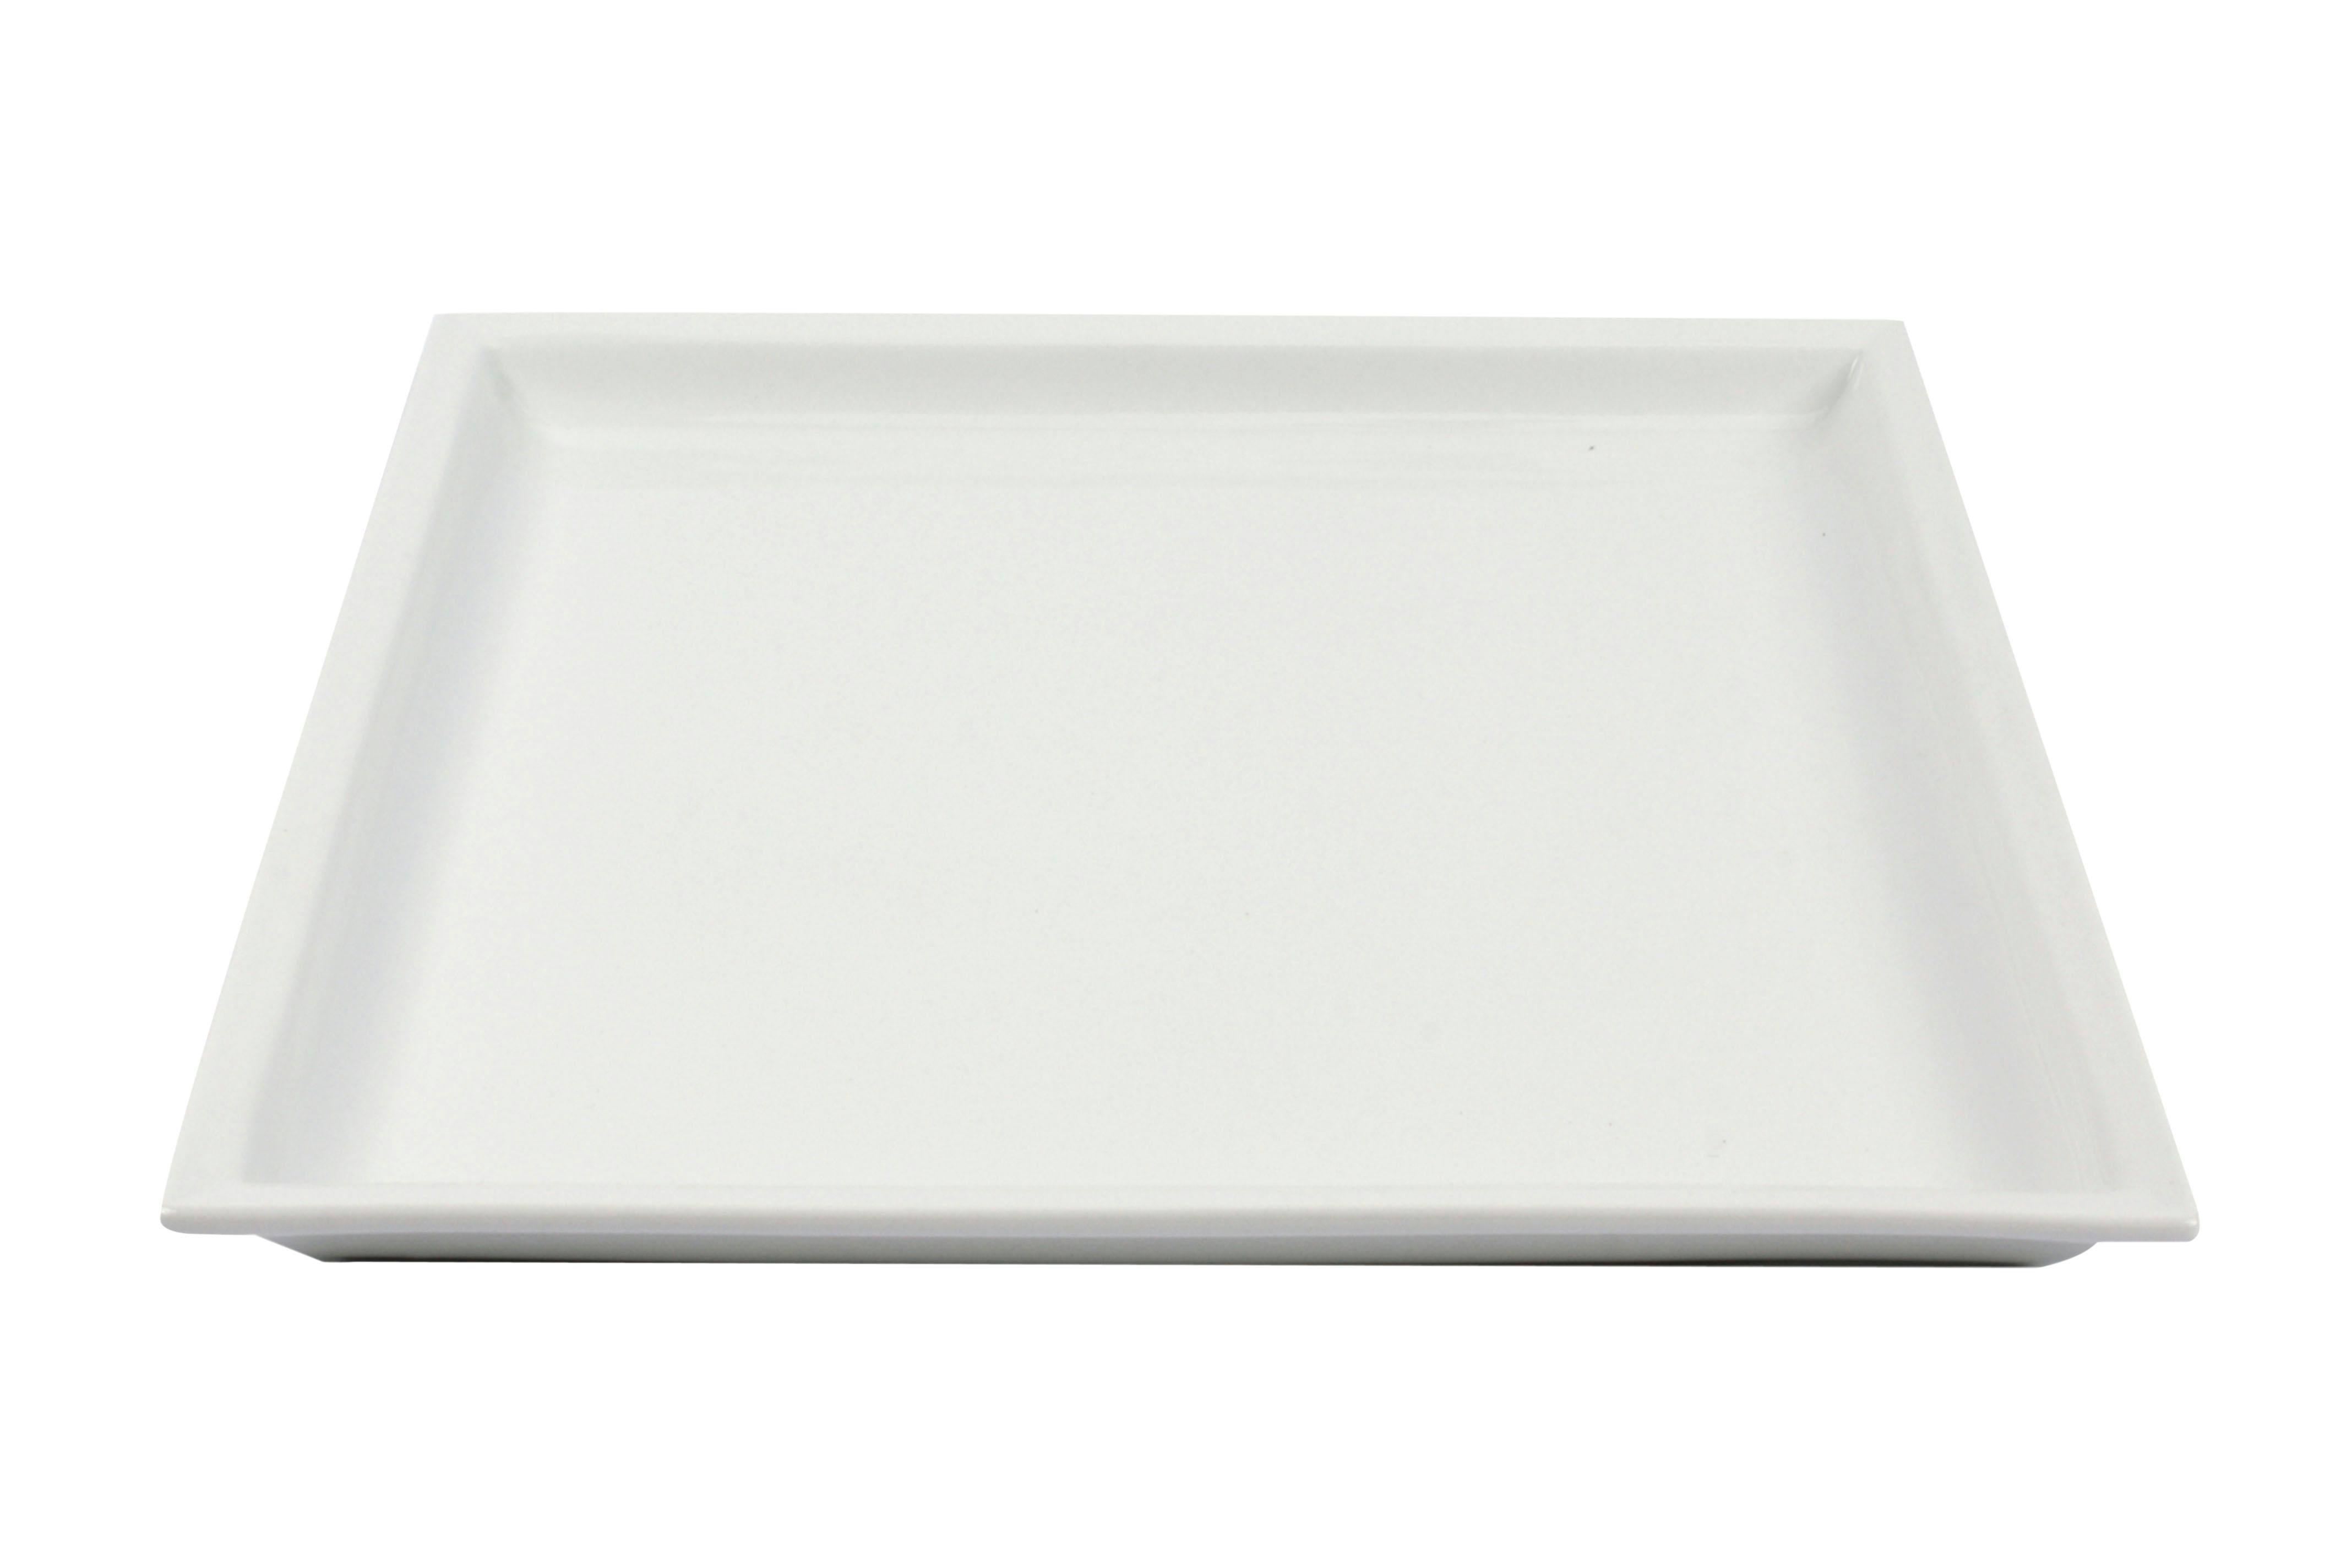 Ristoline set 4 piatti quadrati in porcellana bianca cm 26,5x26,5 H 2cm  HP8848